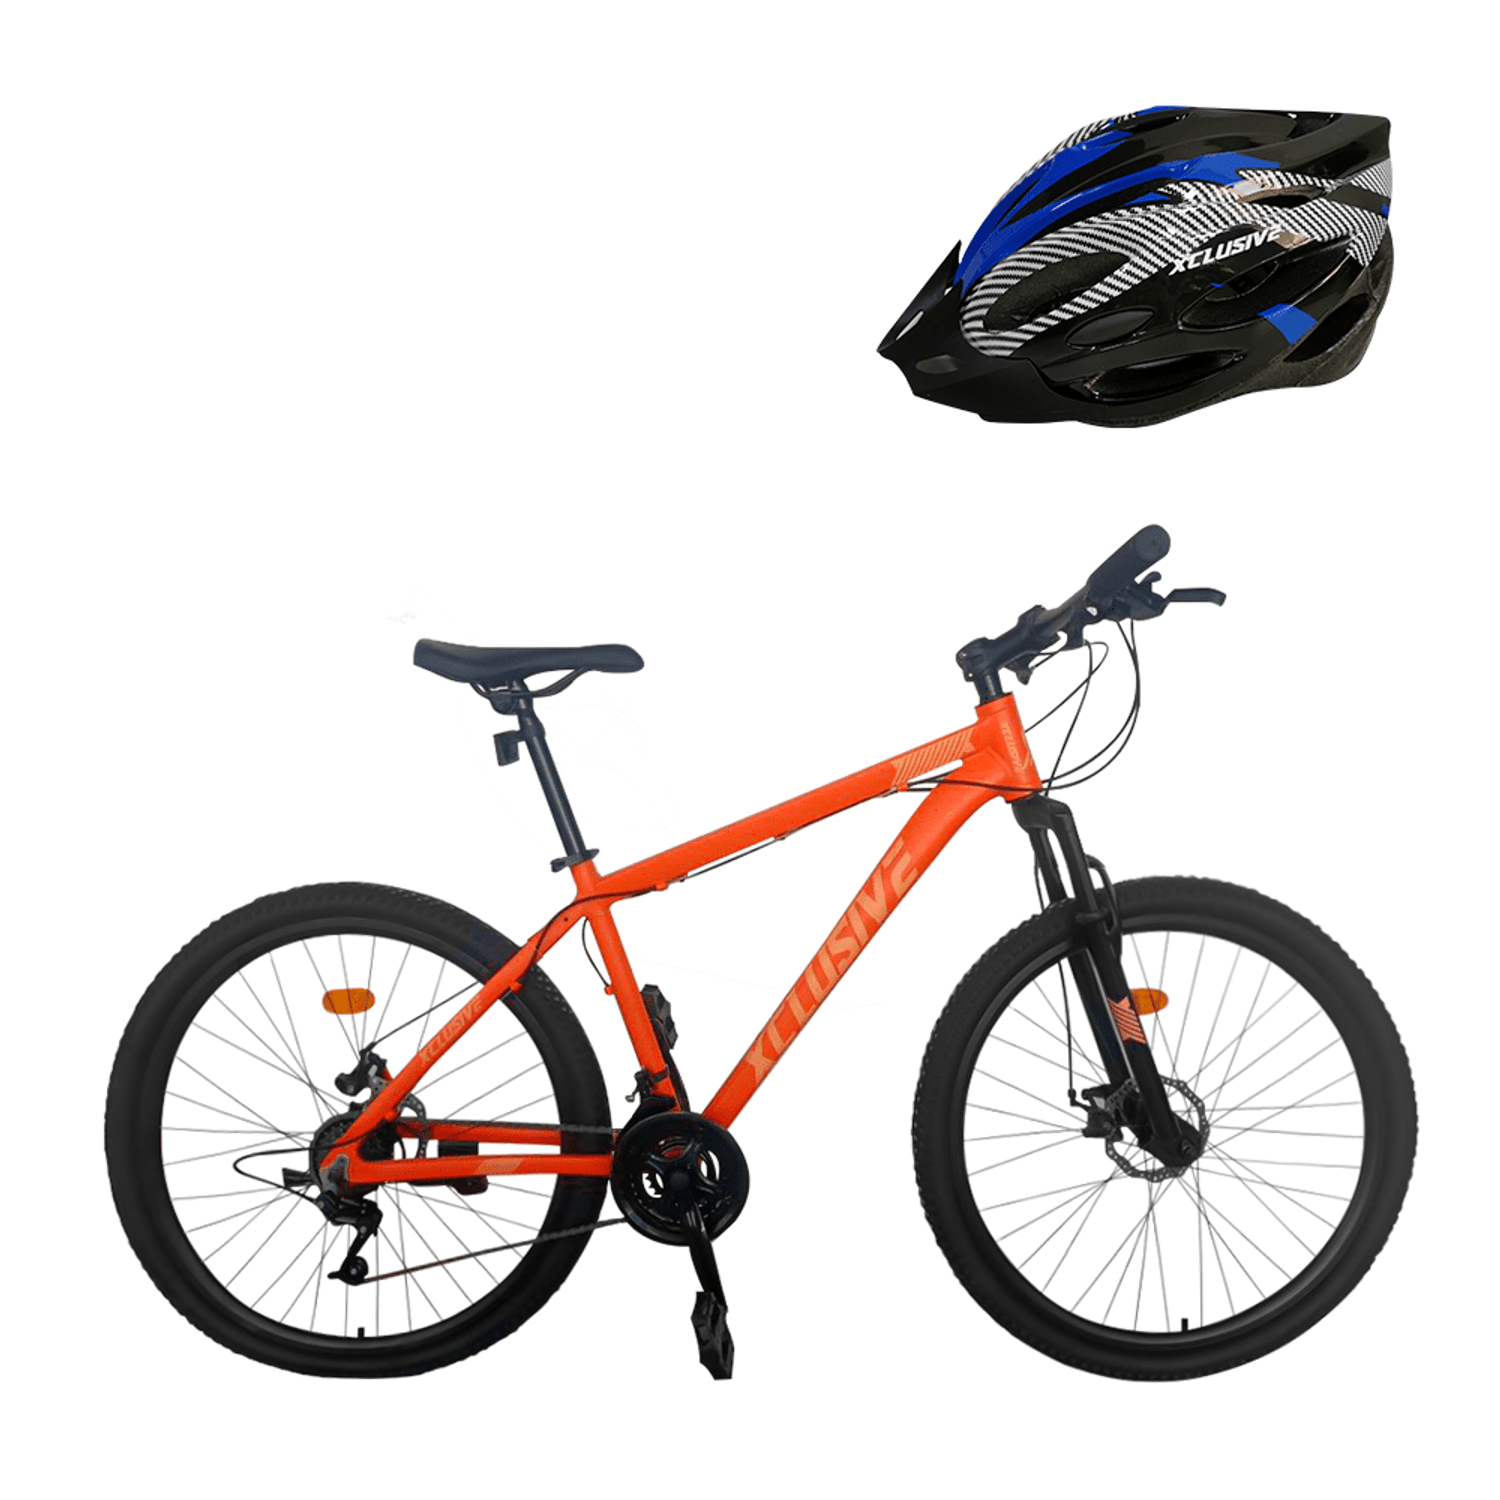 Deportes - Accesorios Bicicletas - Accesorios para bicicletas SUPER RACK –  Oechsle